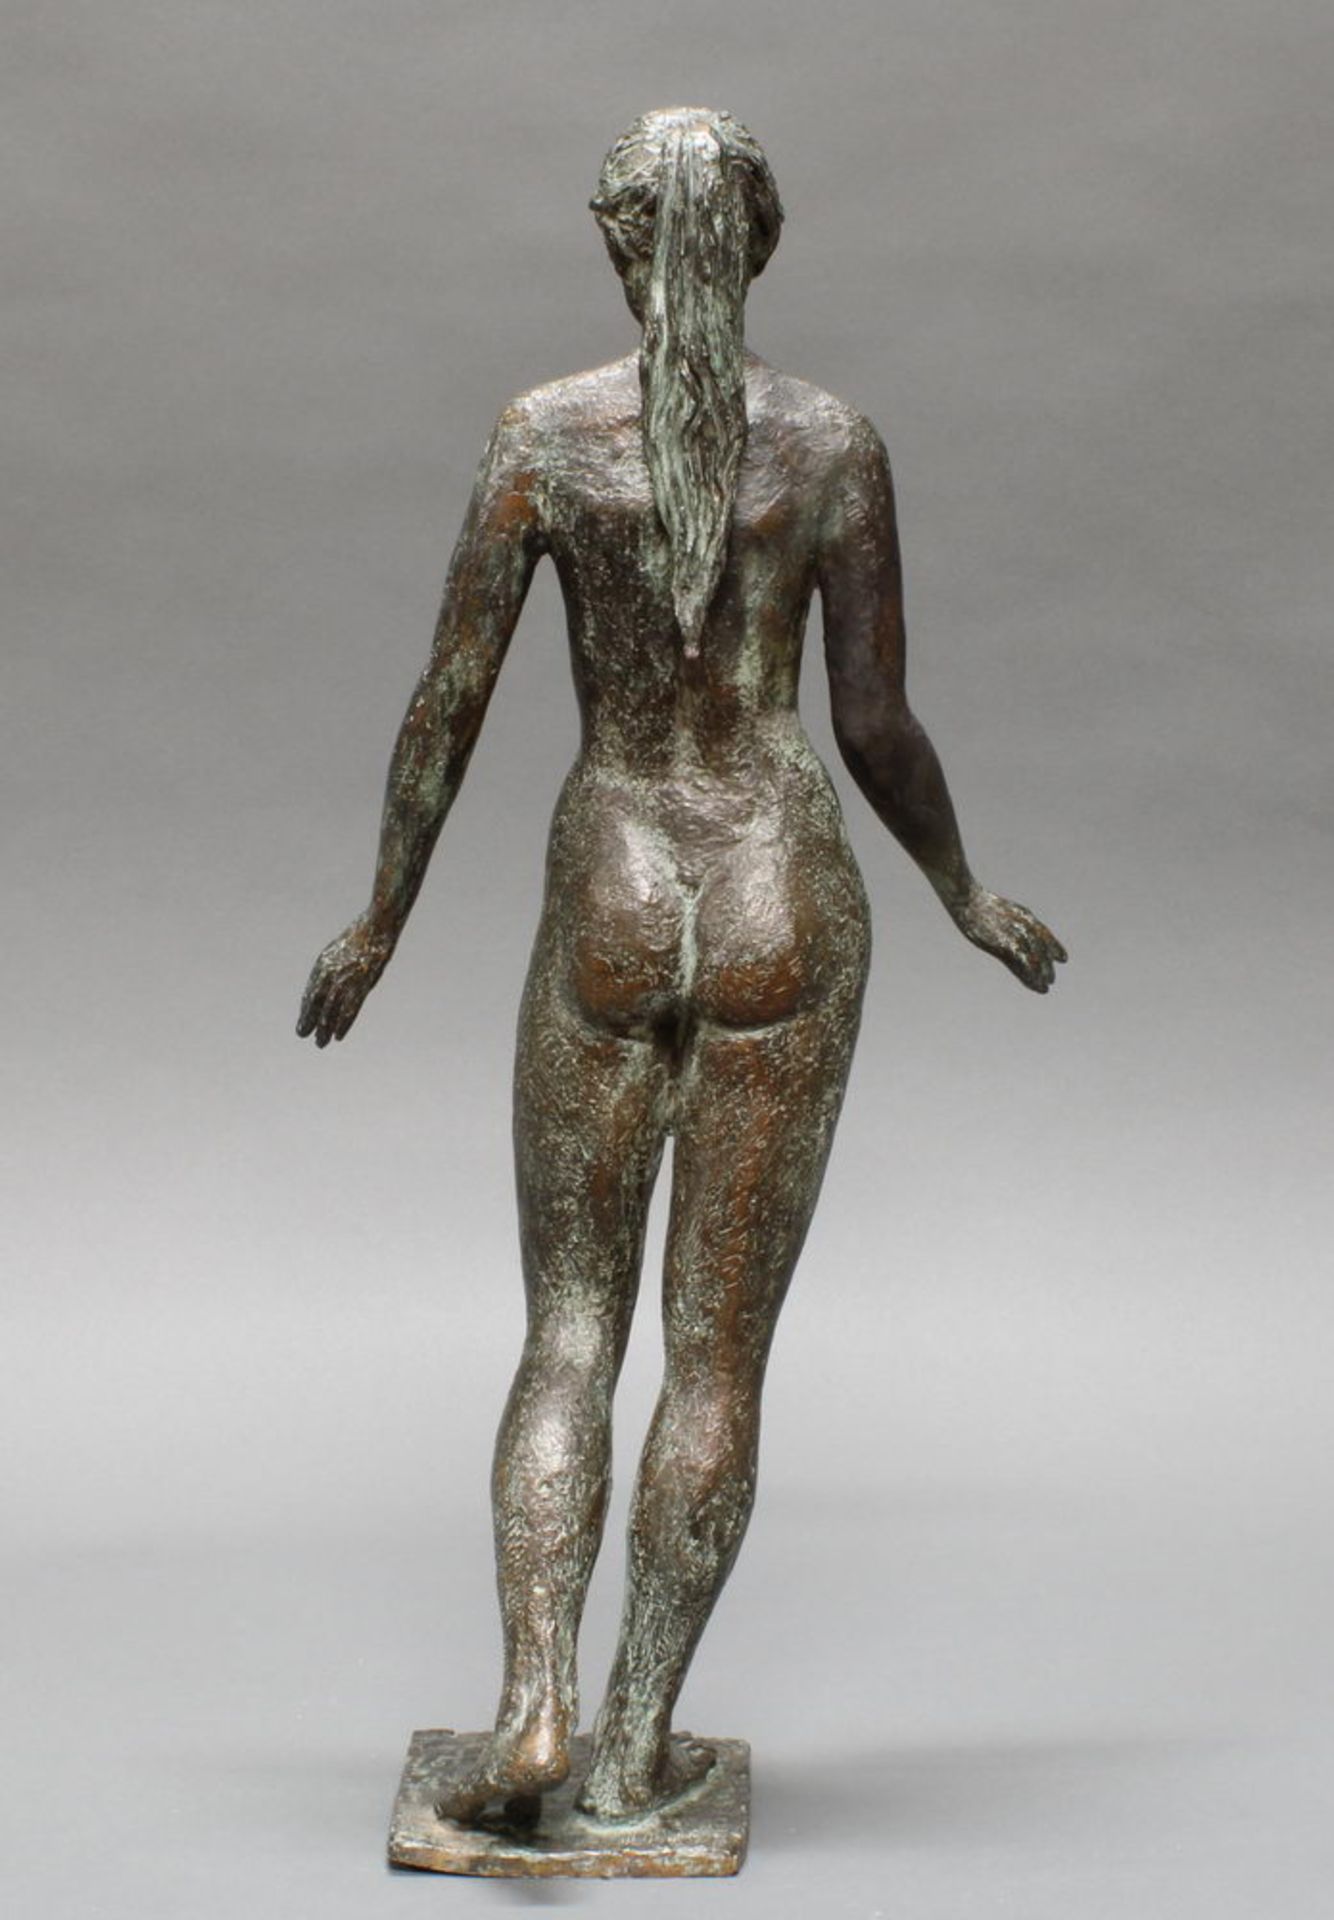 Bronze, grünbraun patiniert, "Stehender weiblicher Akt", auf der Plinthe bezeichnet F. Lipensky un - Image 2 of 3